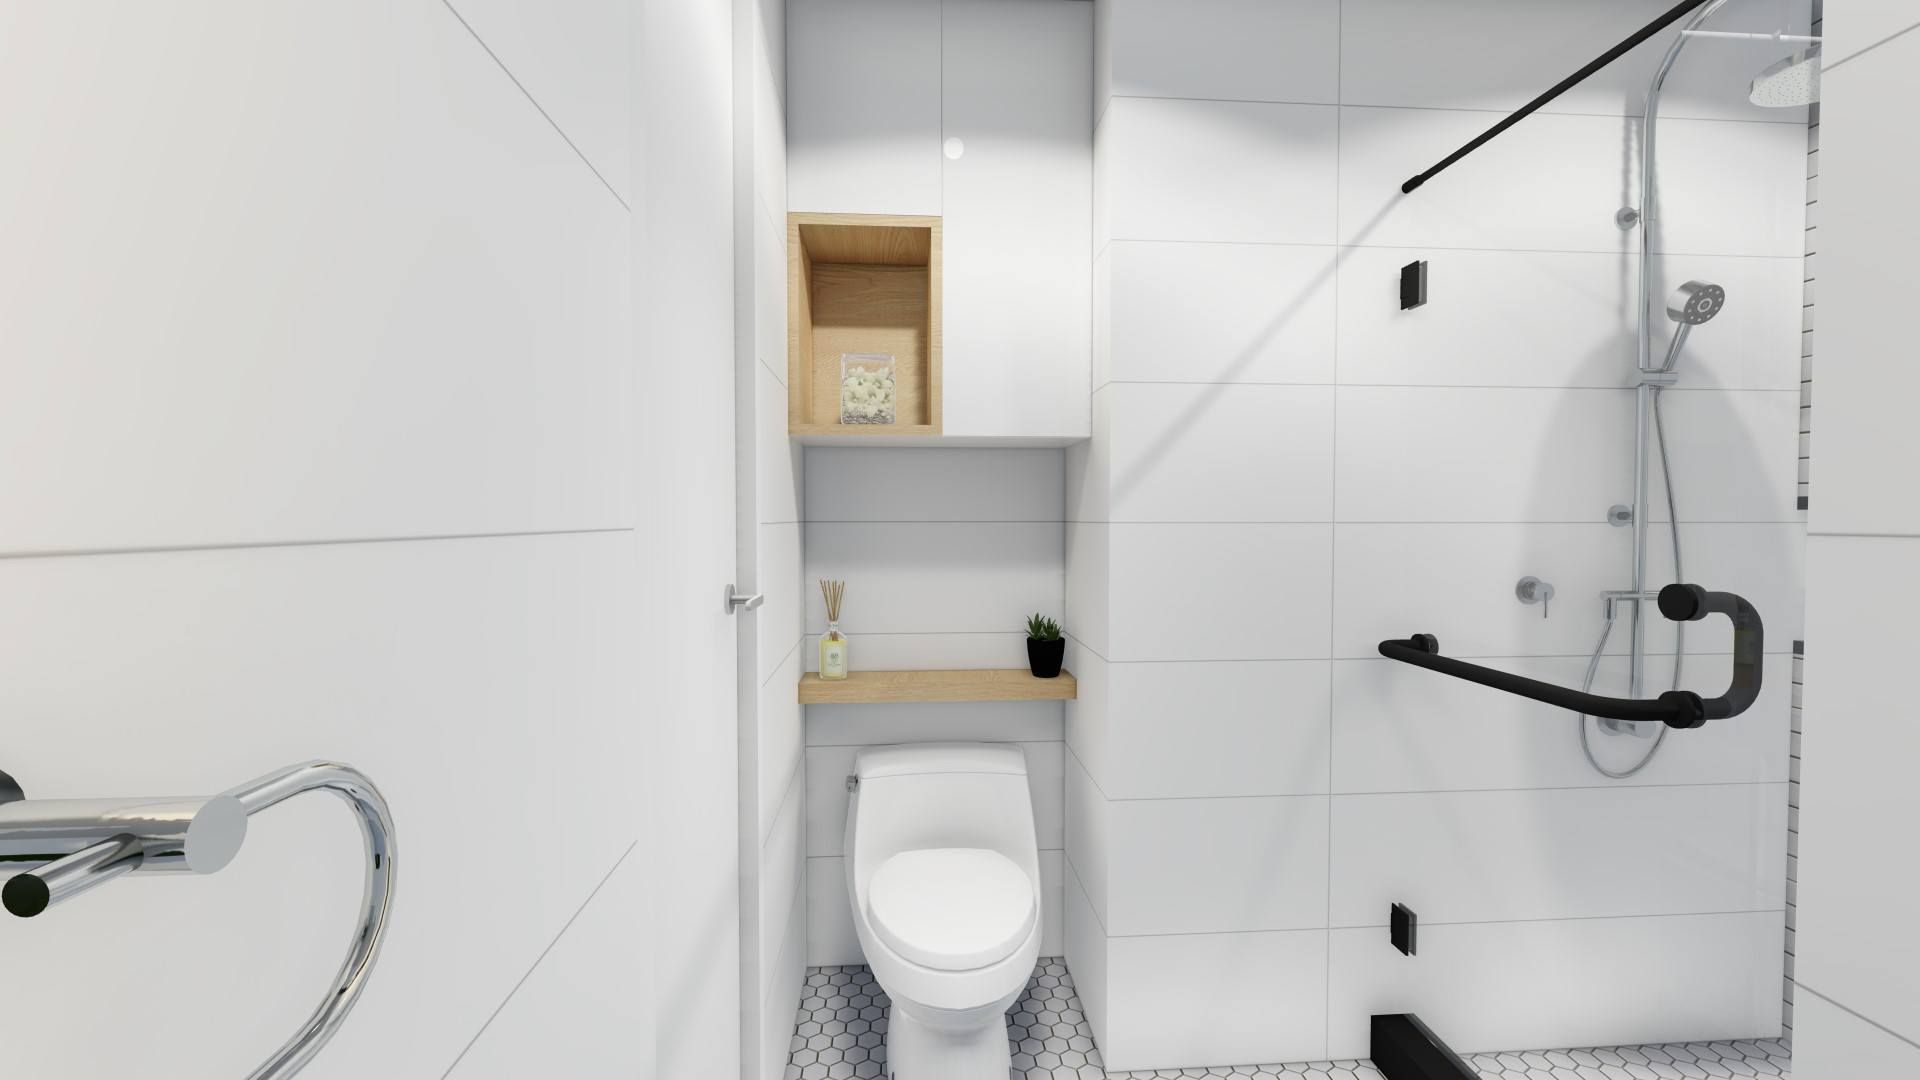 Structura Architects Ванная комната в стиле модерн